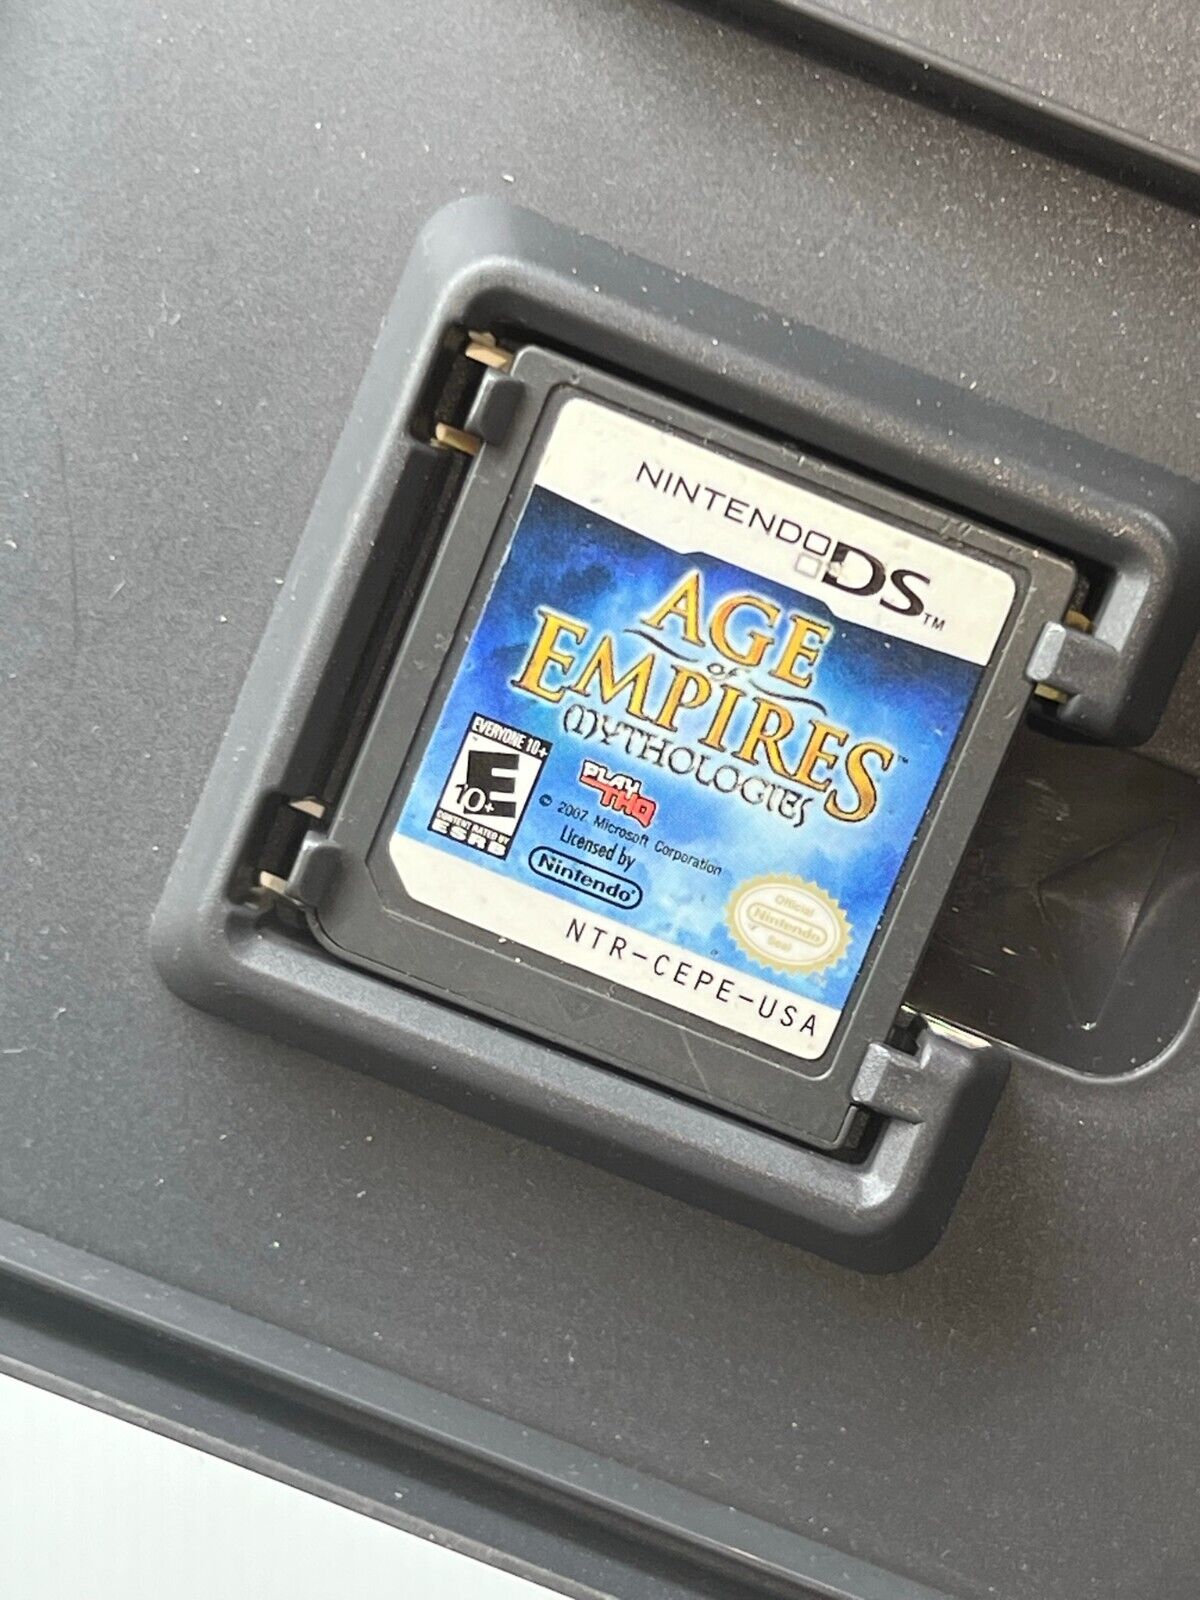 Age of Empires: Mythologies (Nintendo DS, 2008) - Tested